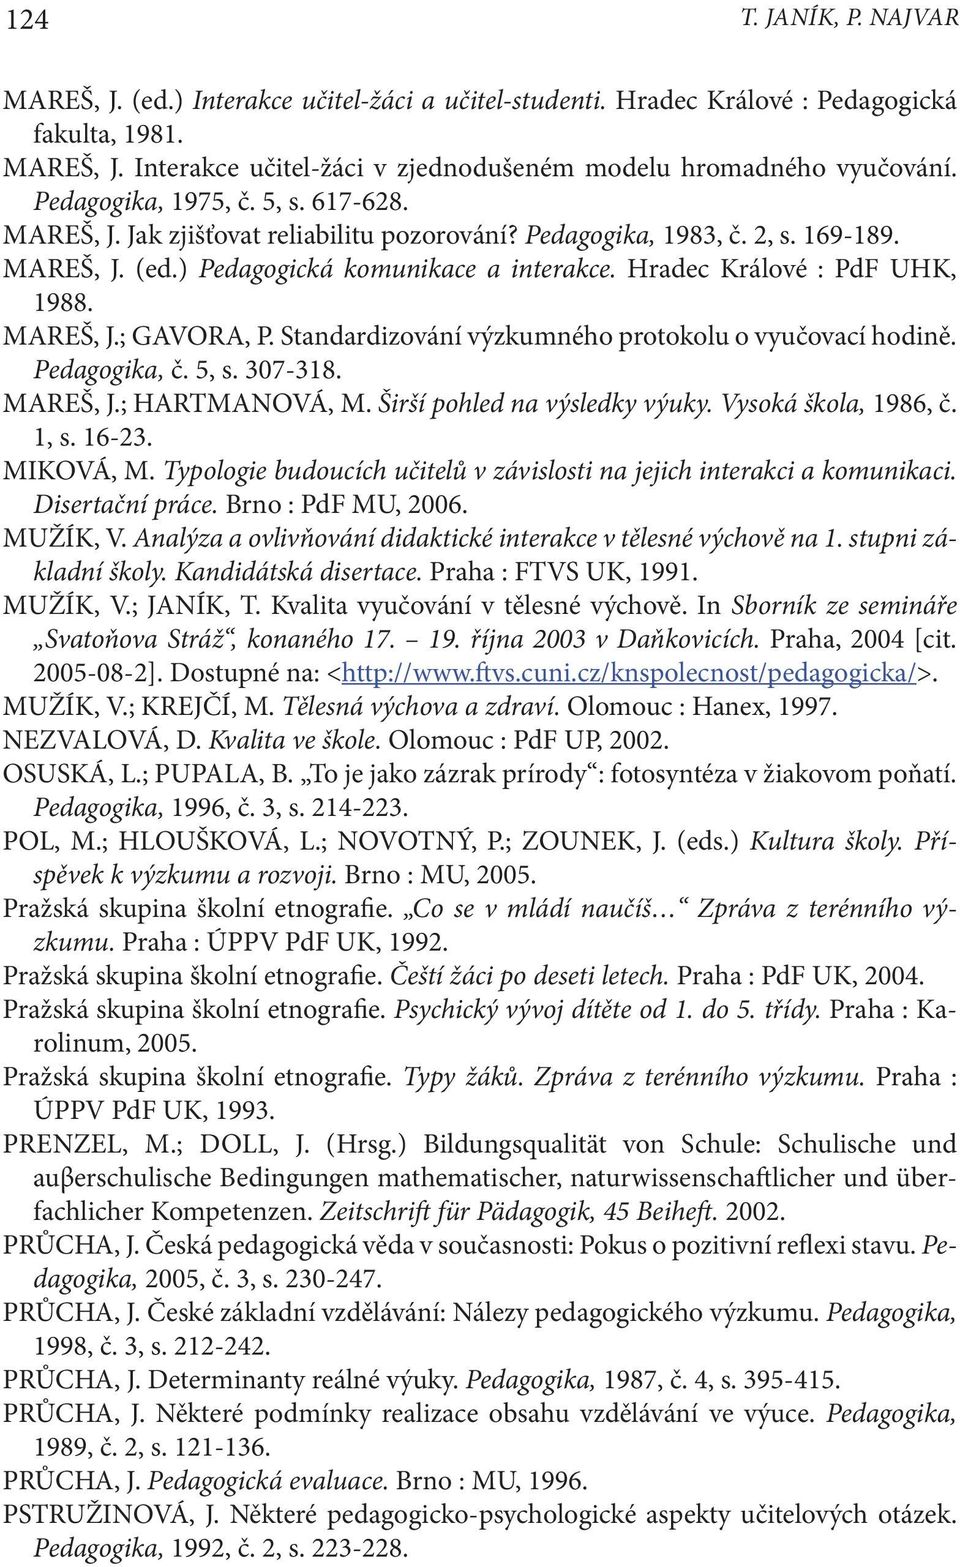 Hradec Králové : PdF UHK, 1988. MAREŠ, J.; GAVORA, P. Standardizování výzkumného protokolu o vyučovací hodině. Pedagogika, č. 5, s. 307-318. MAREŠ, J.; HARTMANOVÁ, M. Širší pohled na výsledky výuky.